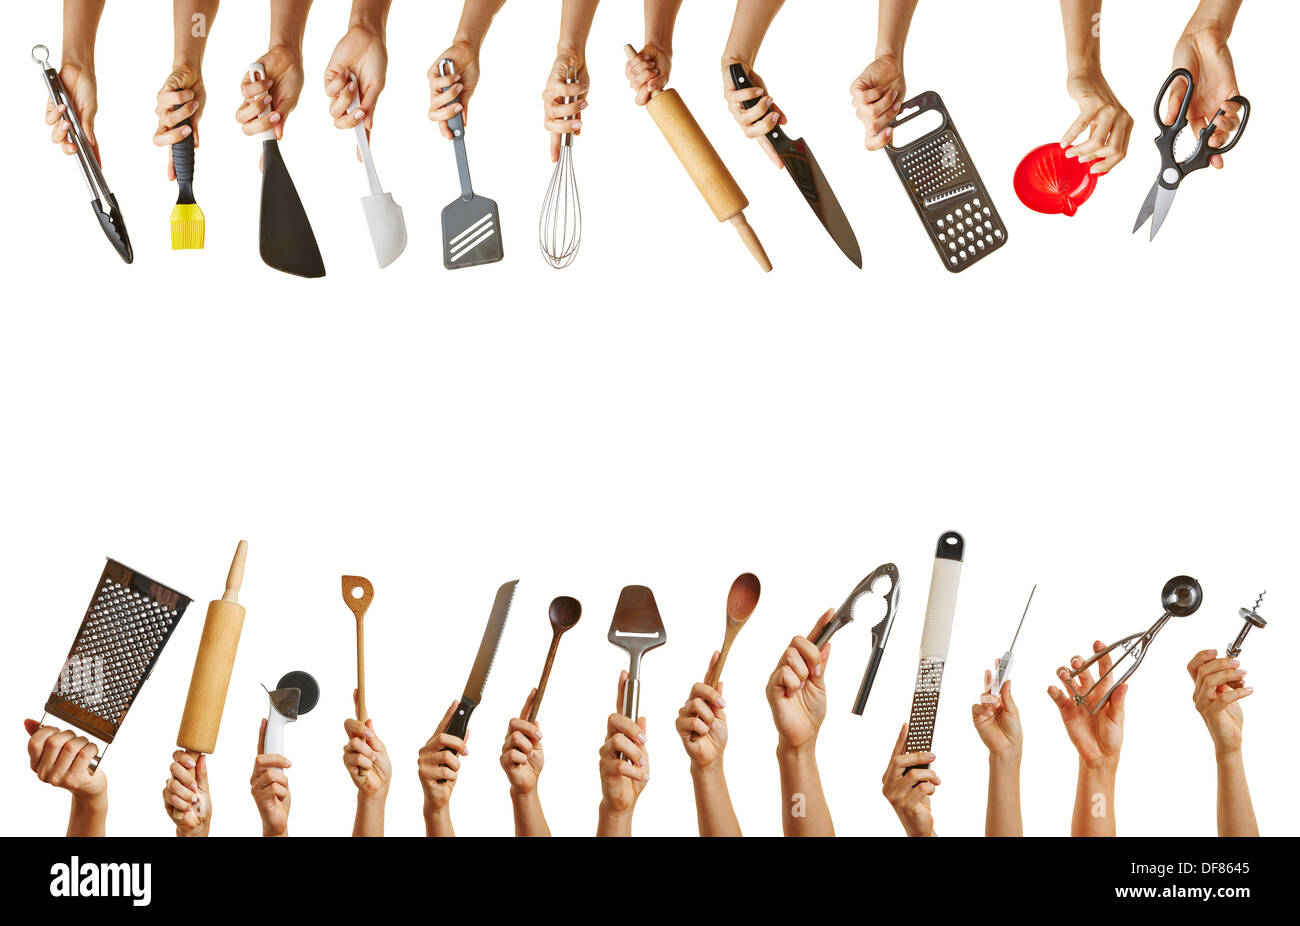 Rahmen mit vielen Händen halten verschiedene Küchenutensilien wie Messer, Scheren und Löffel Stockfoto